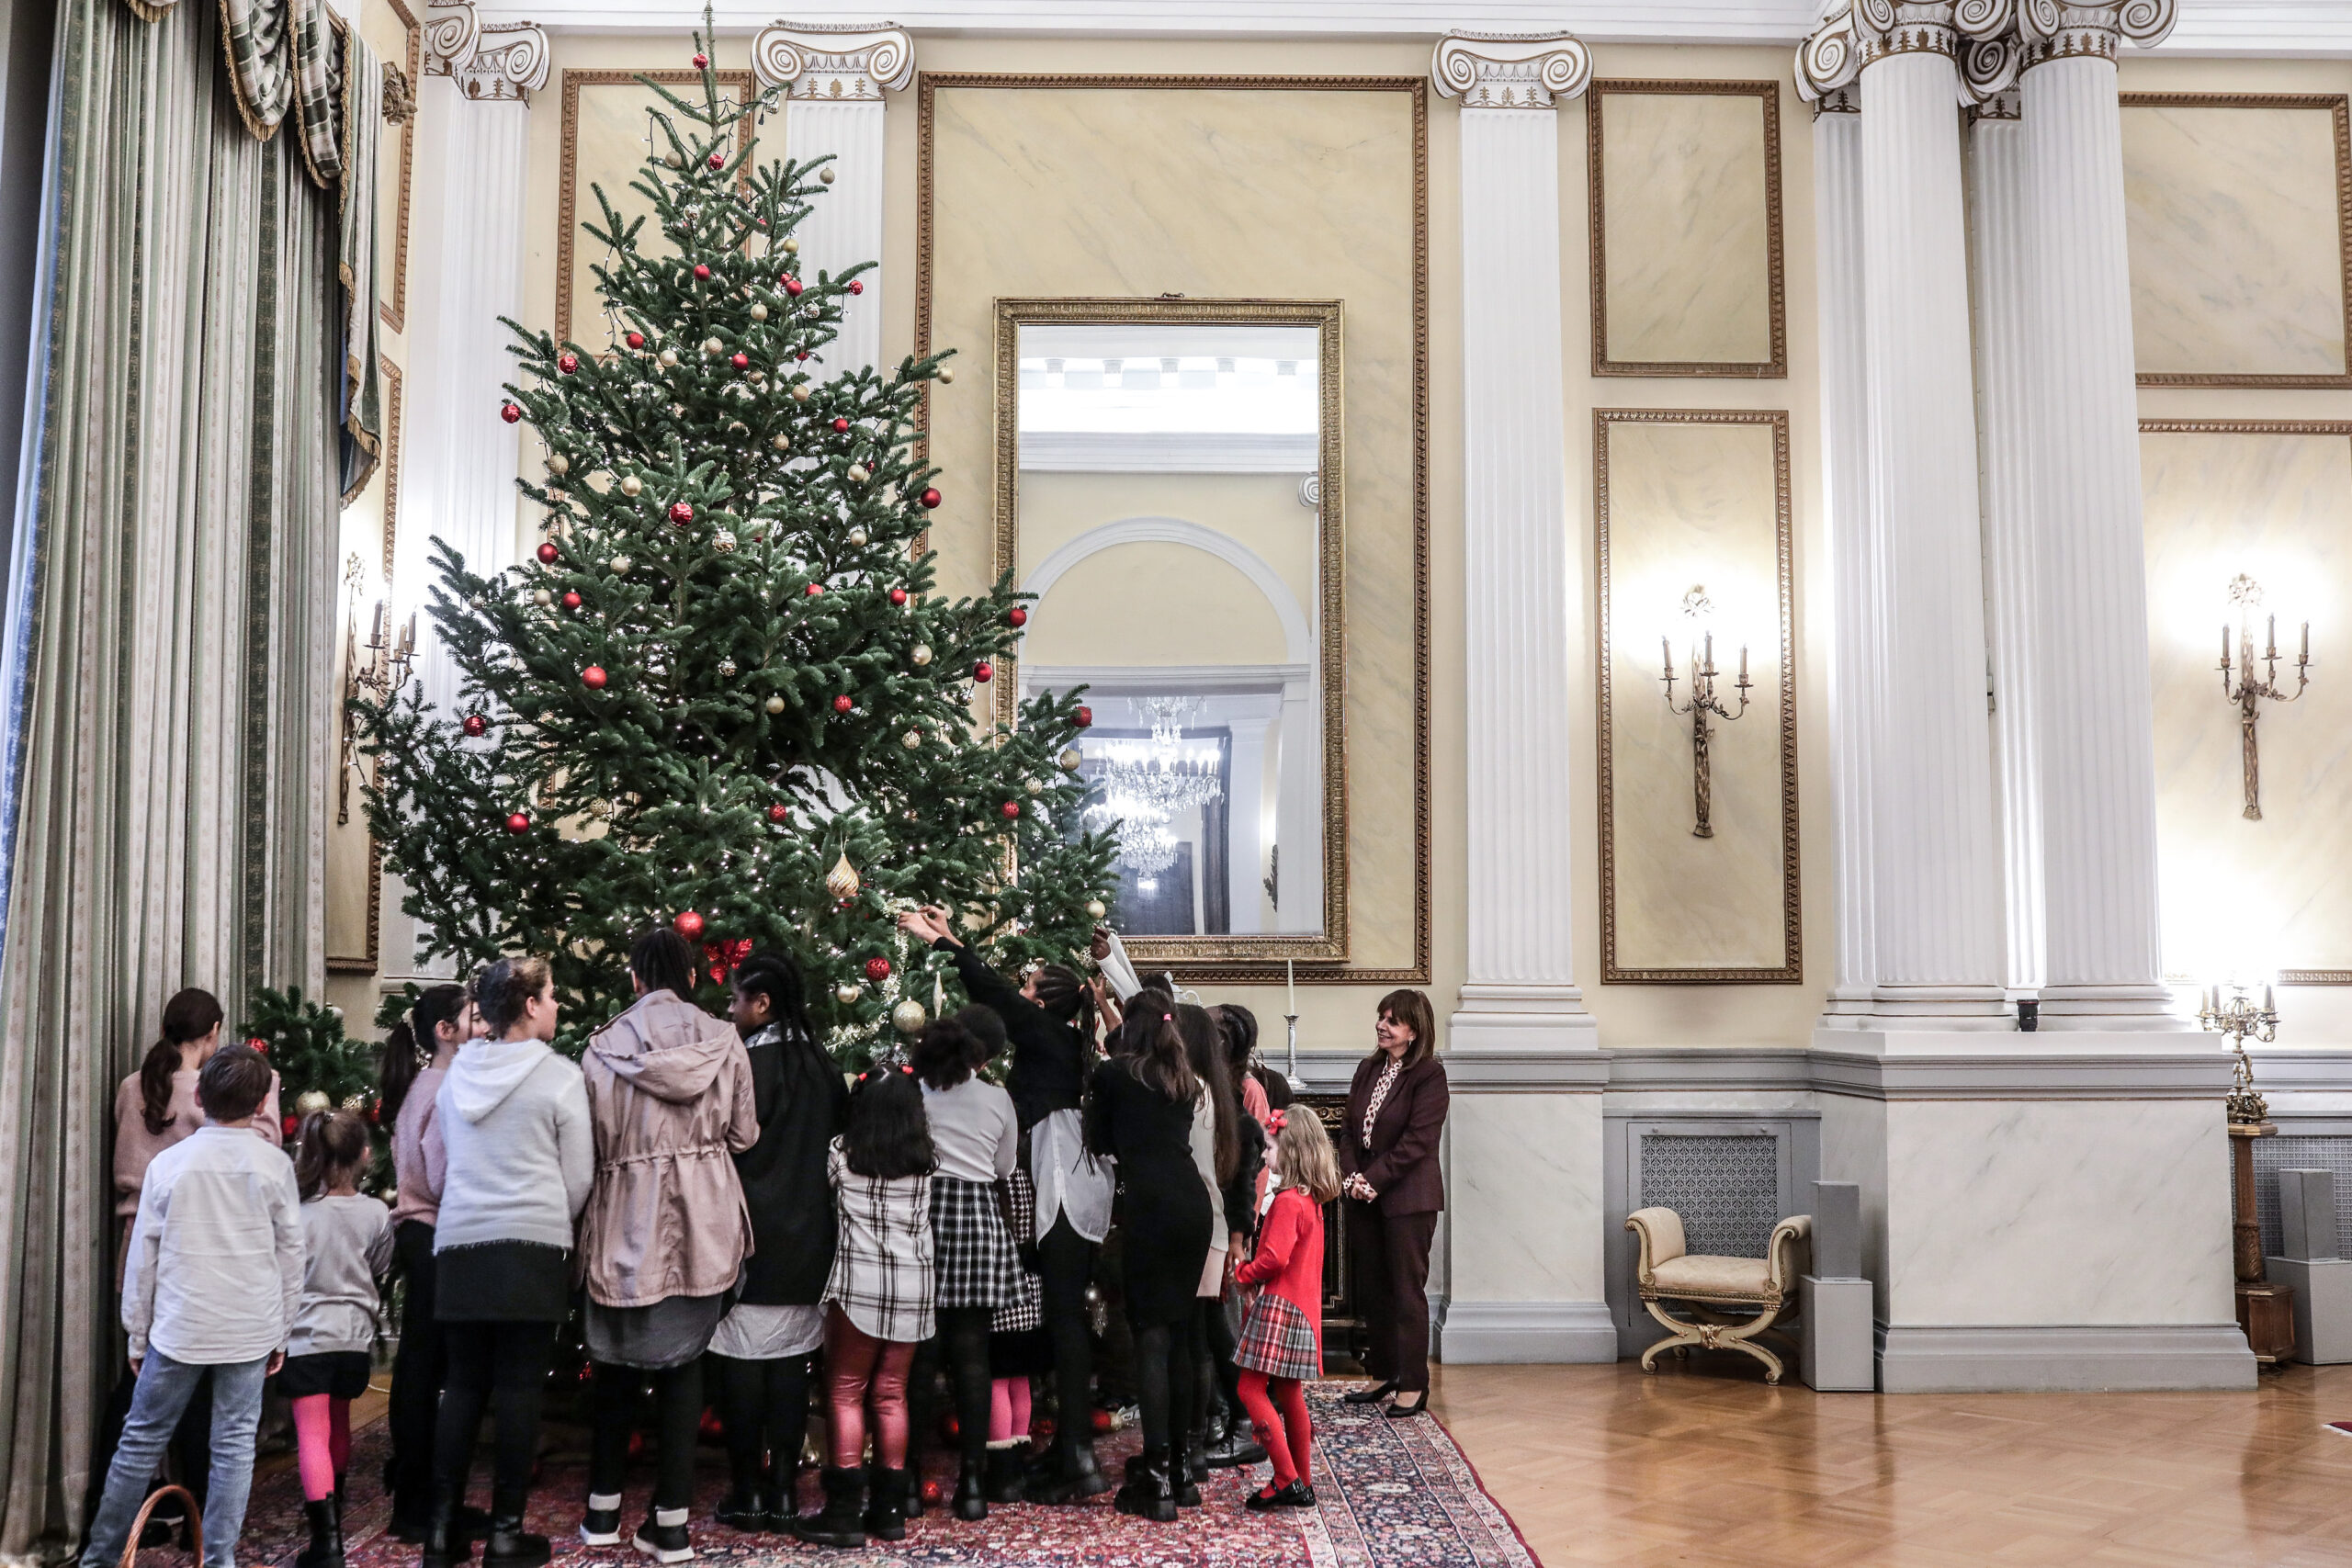 Η ΠτΔ Κατερίνα Σακελλαροπούλου στόλισε το δέντρο του Προεδρικού Μεγάρου παρέα με παιδιά από το Χατζηκυριάκειο Ίδρυμα